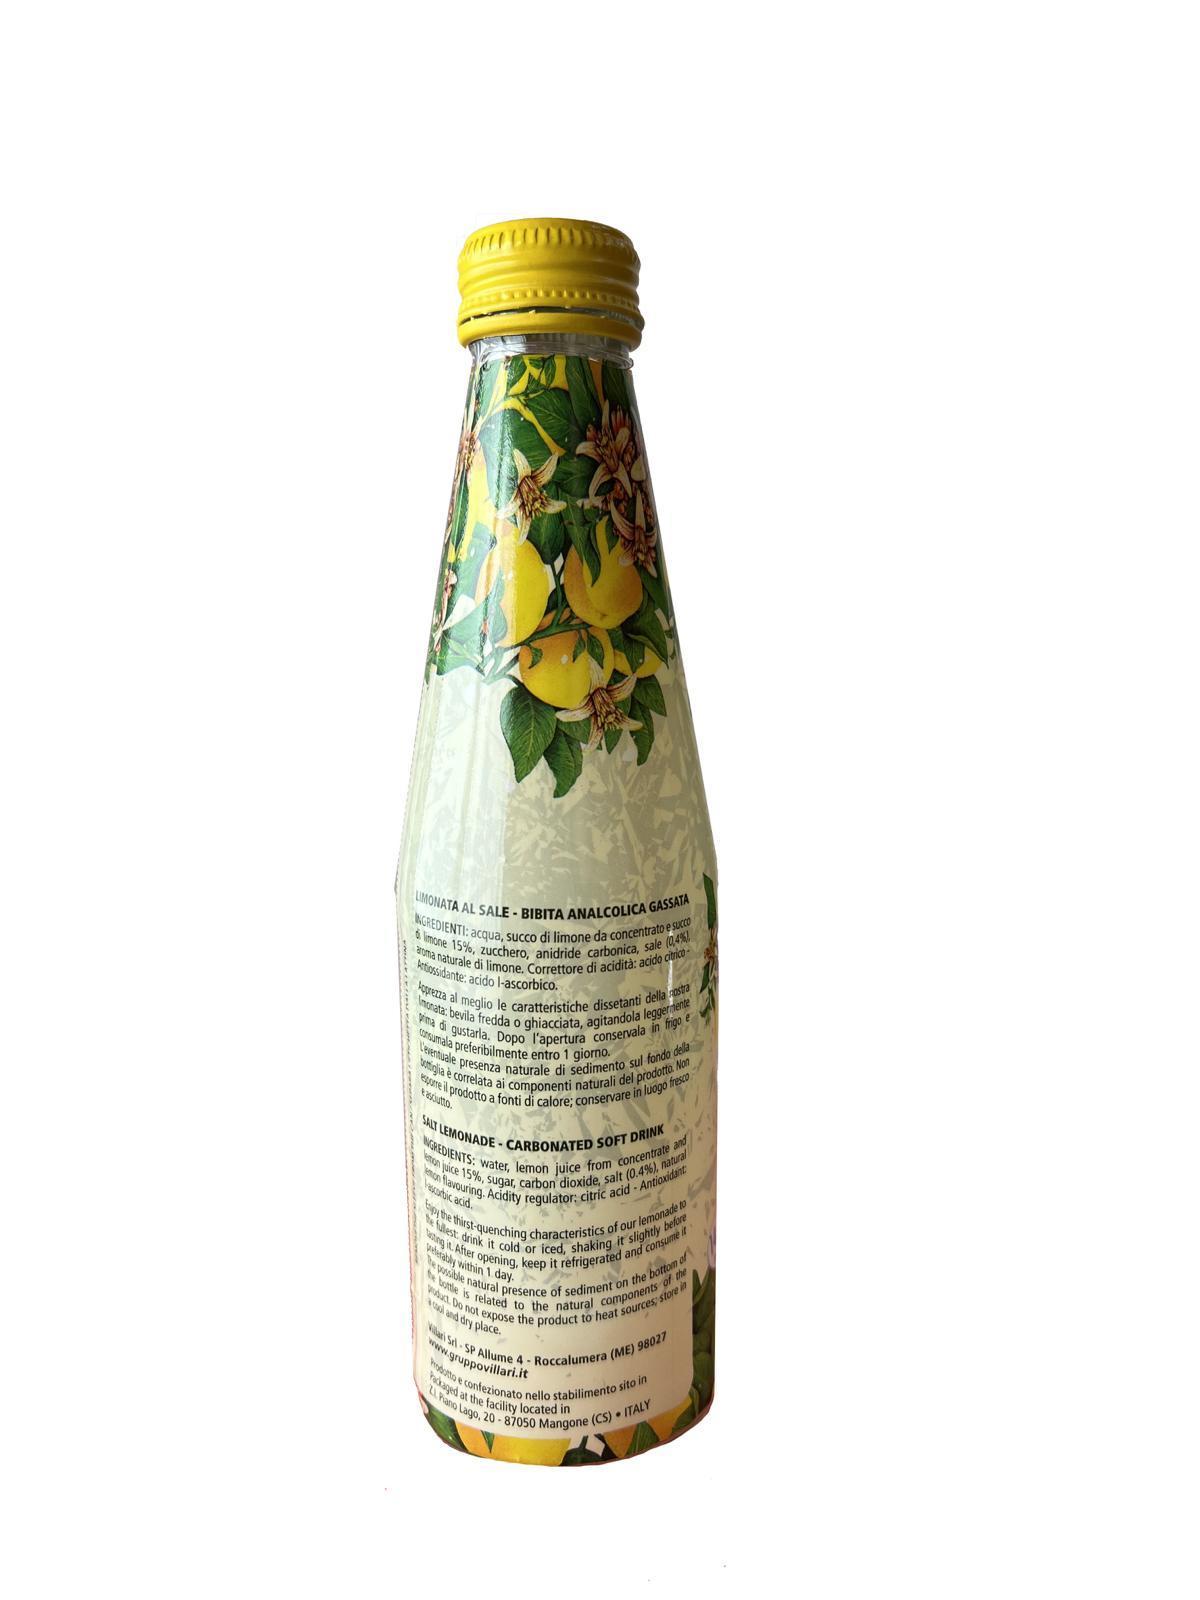 Limonata Fior di sale Lumi antica ricetta siciliana in bottiglia di vetro da 250ml. Retro Bottiglia